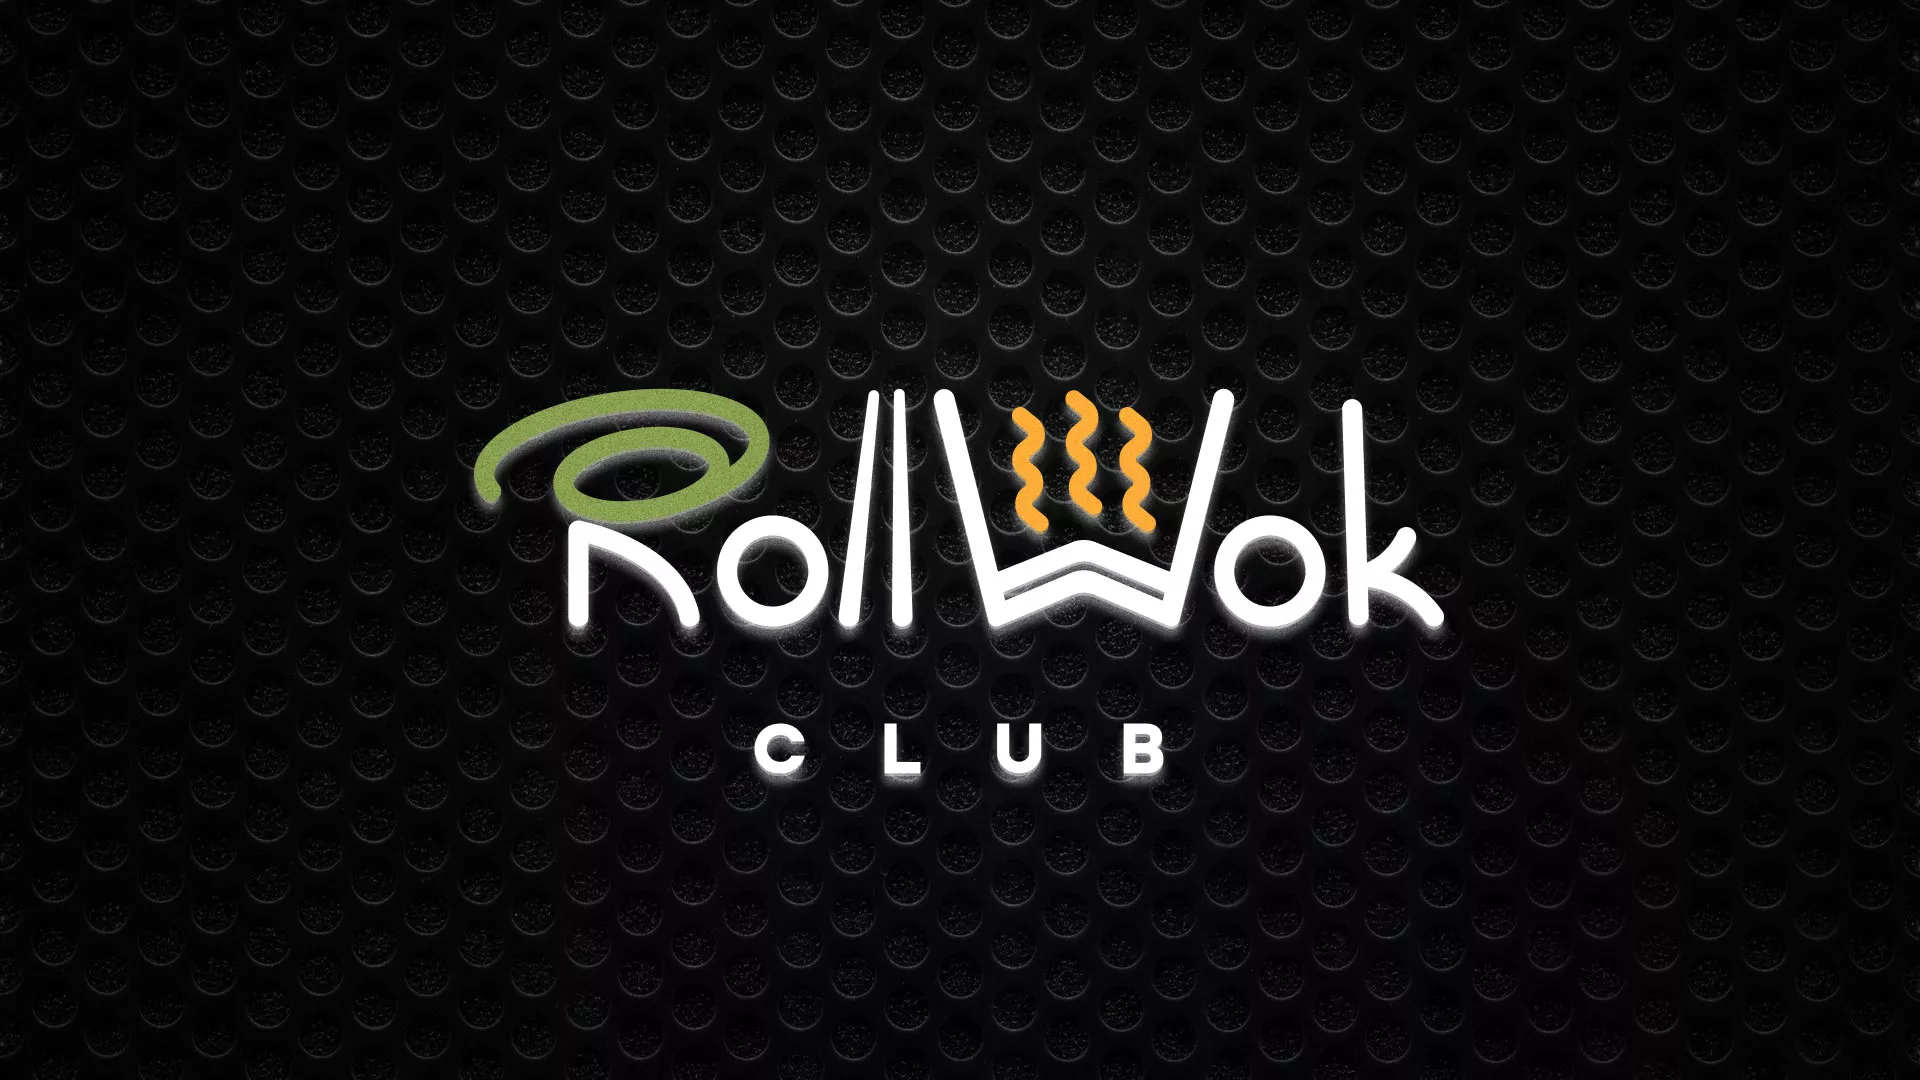 Брендирование торговых точек суши-бара «Roll Wok Club» в Каменске-Уральском